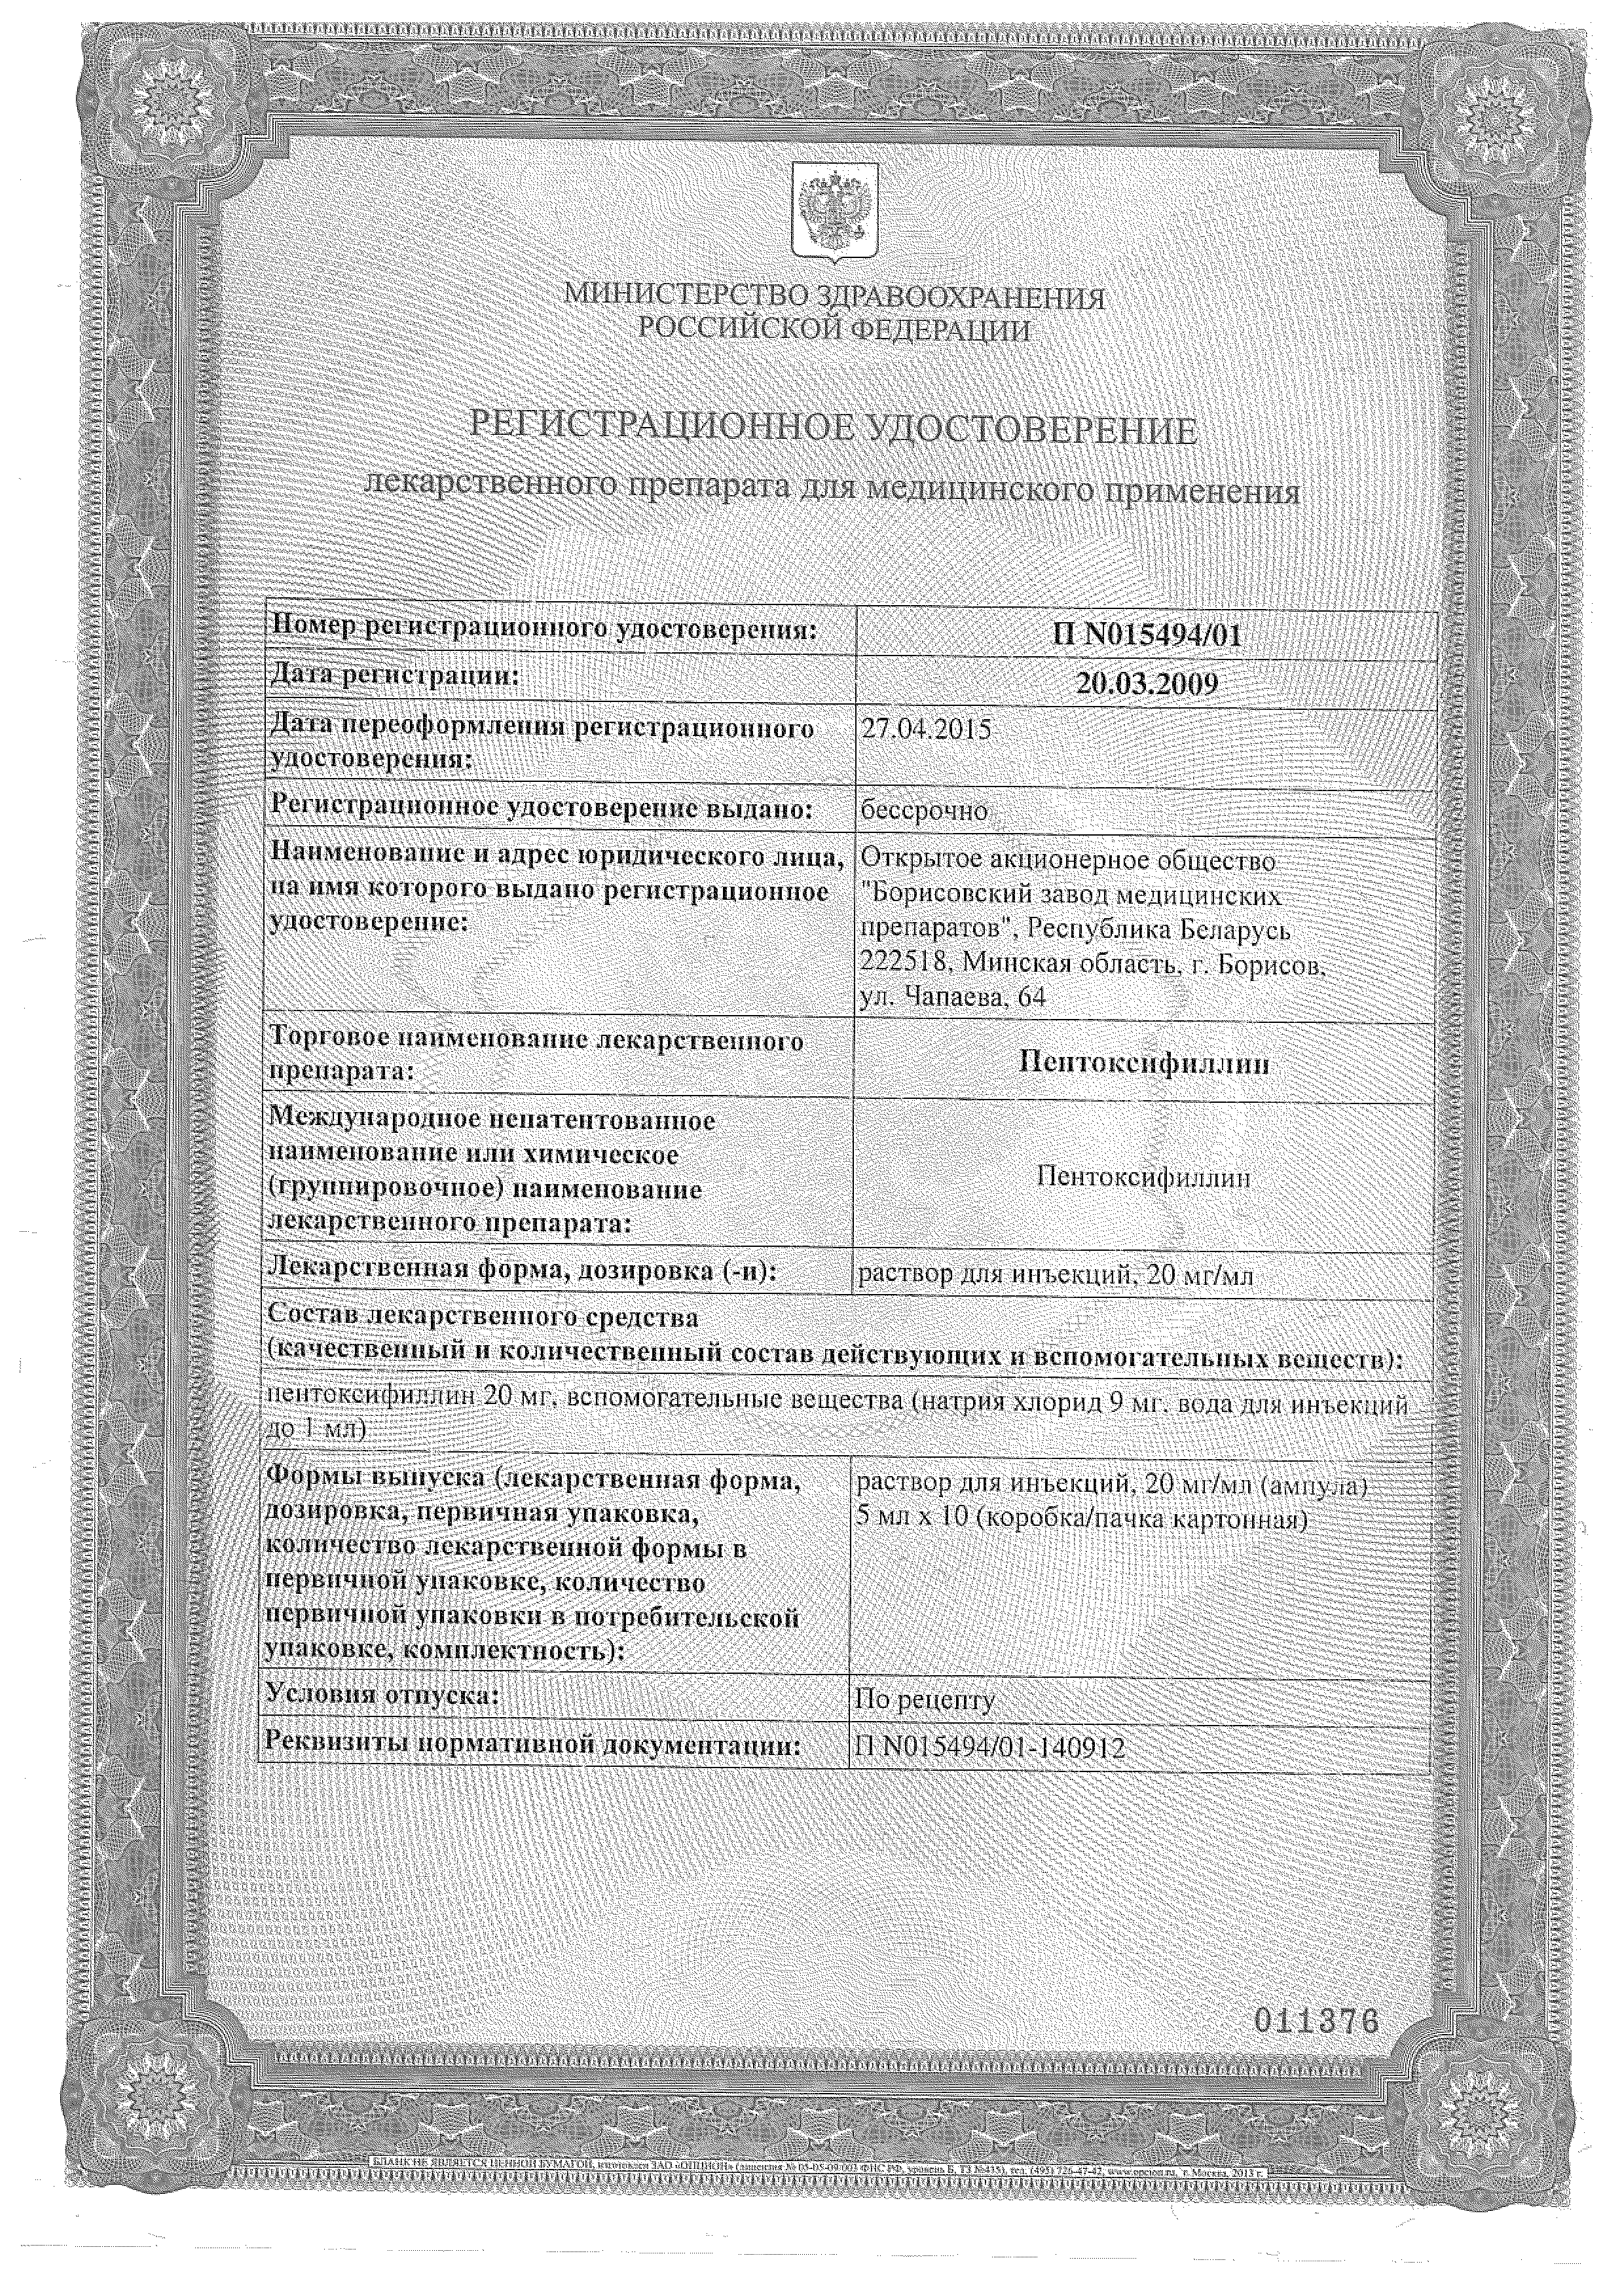 Пентоксифиллин (для инъекций) сертификат